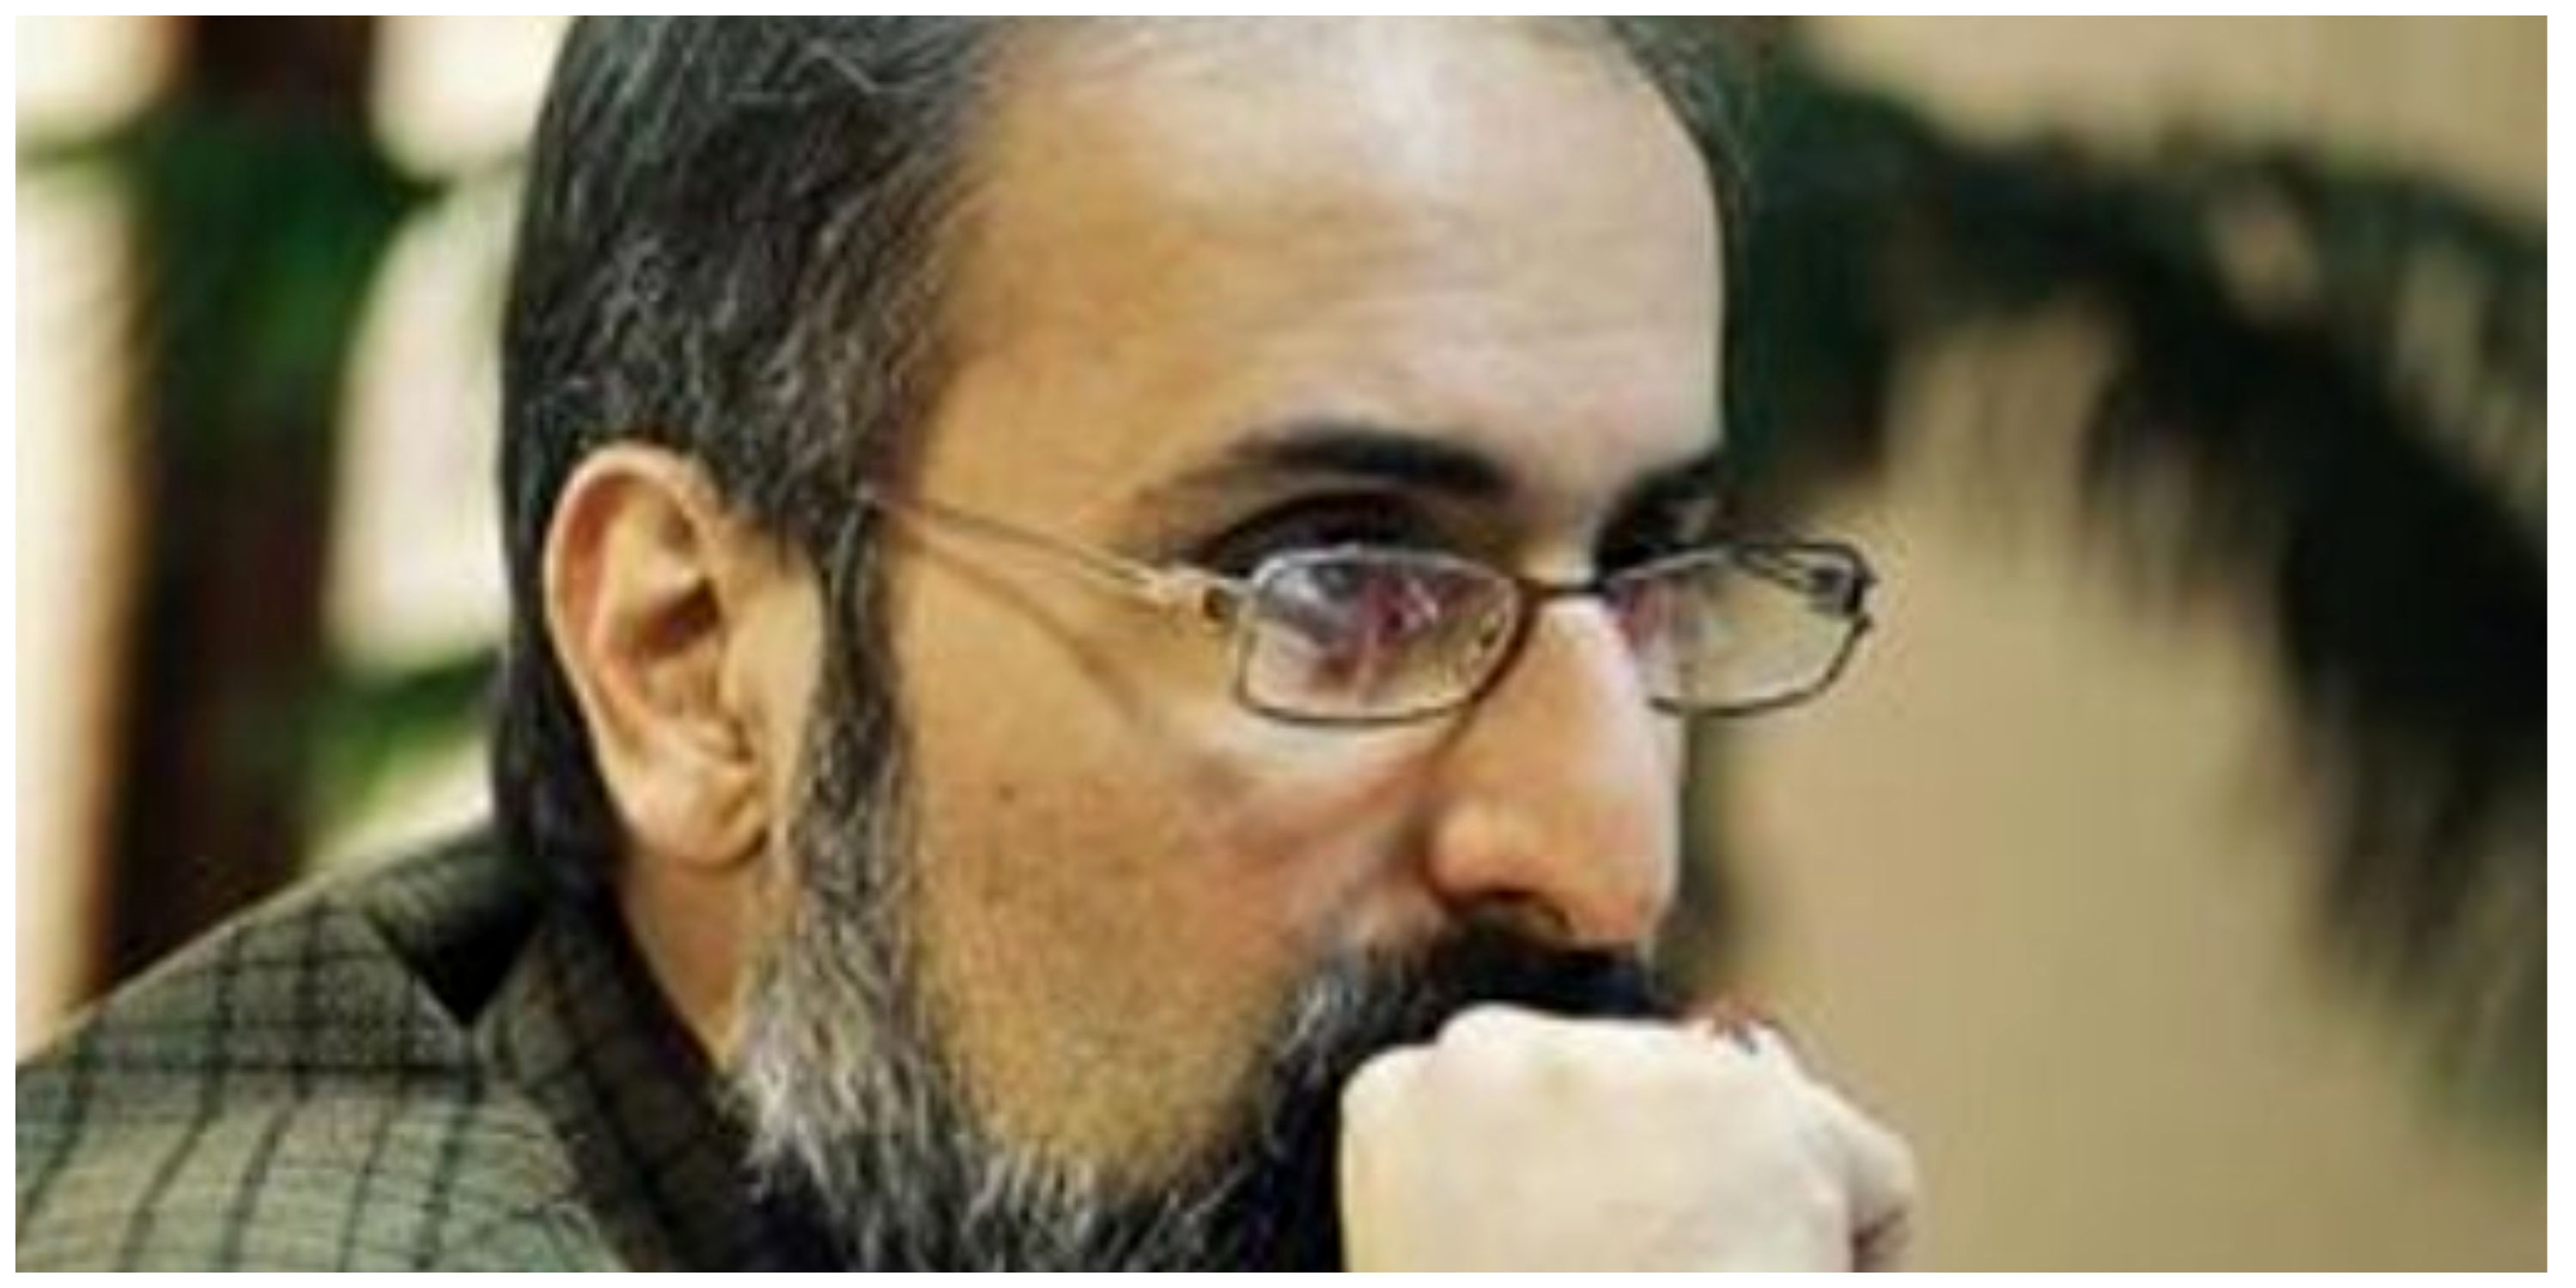 واکنش مشاور سابق احمدی نژاد به رفتار زشت منادی/ اگر این پیشرفت نیست پس چیست؟